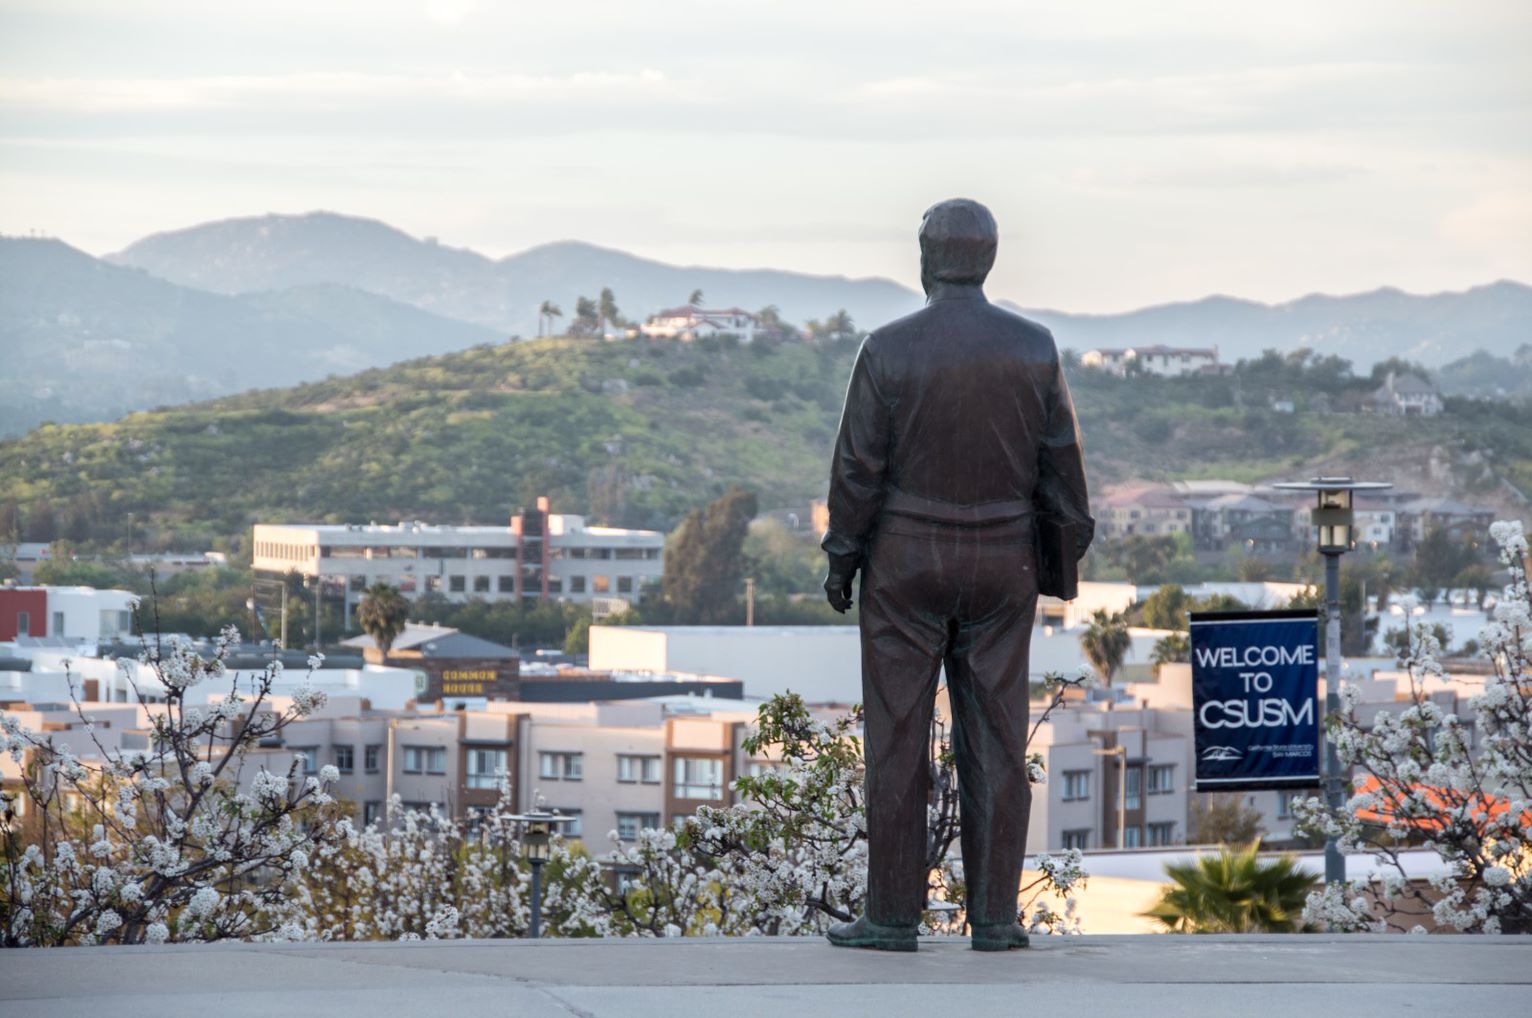 chavez statue overlooking community